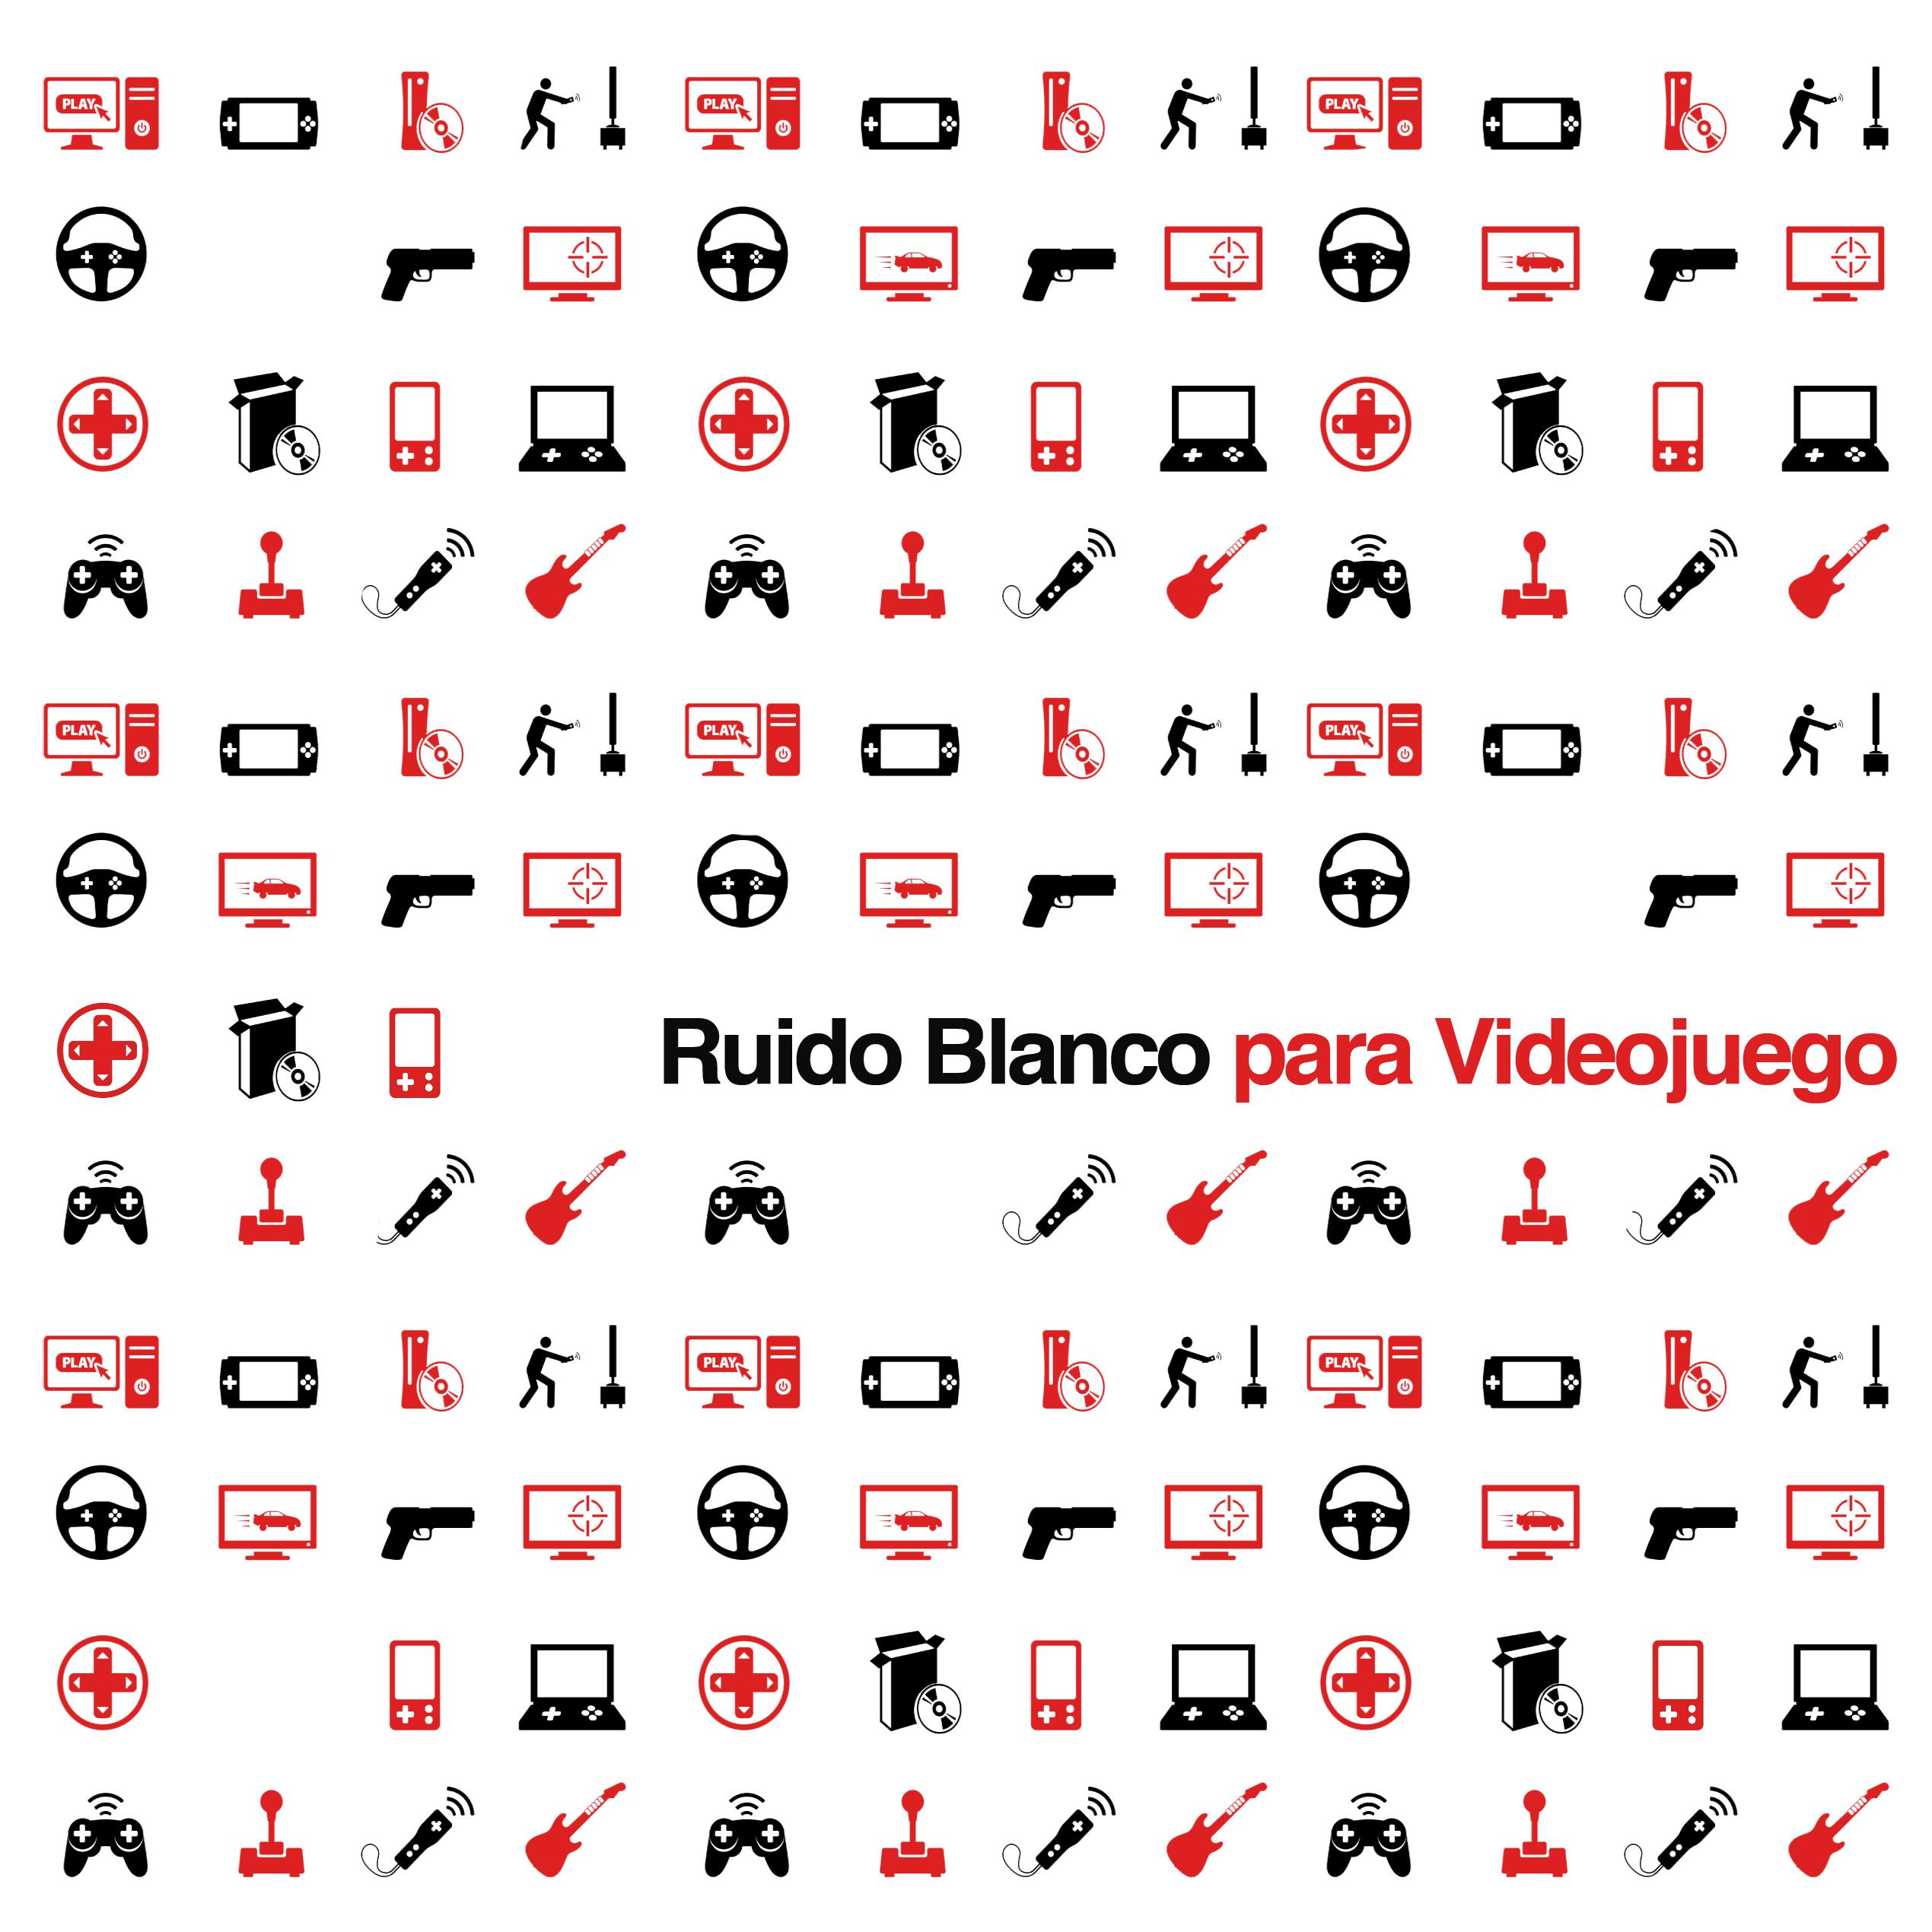 Ruido Blanco para Videojuegos: Aumenta tu concentracio n en la consola con enmascaramiento sonoro u til para cualquier jugador